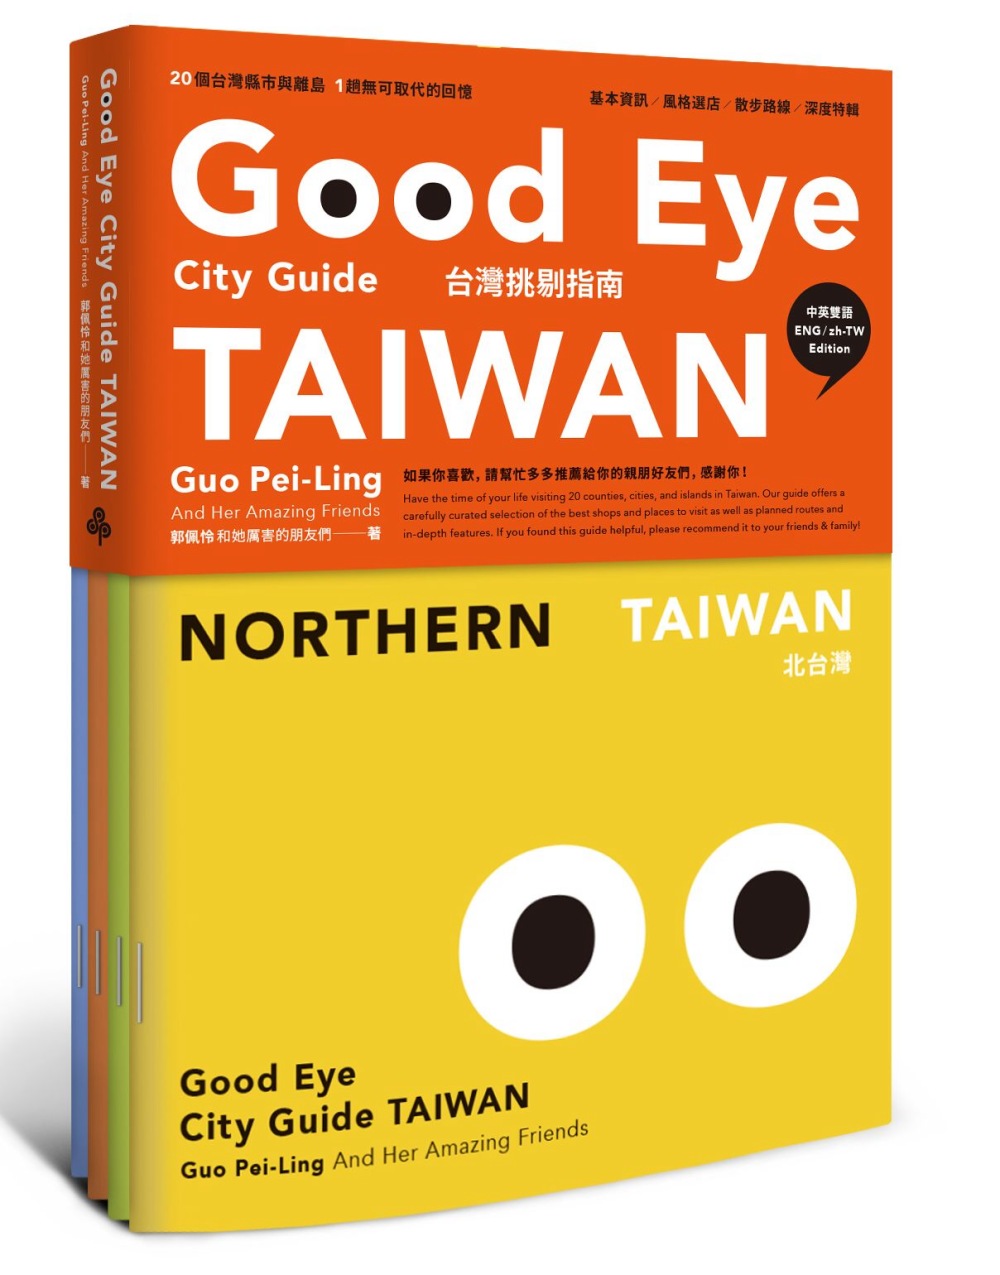 GOOD EYE 台灣挑剔指南：第一本讓世界認識台灣的中英文風格旅遊書(中英雙語)